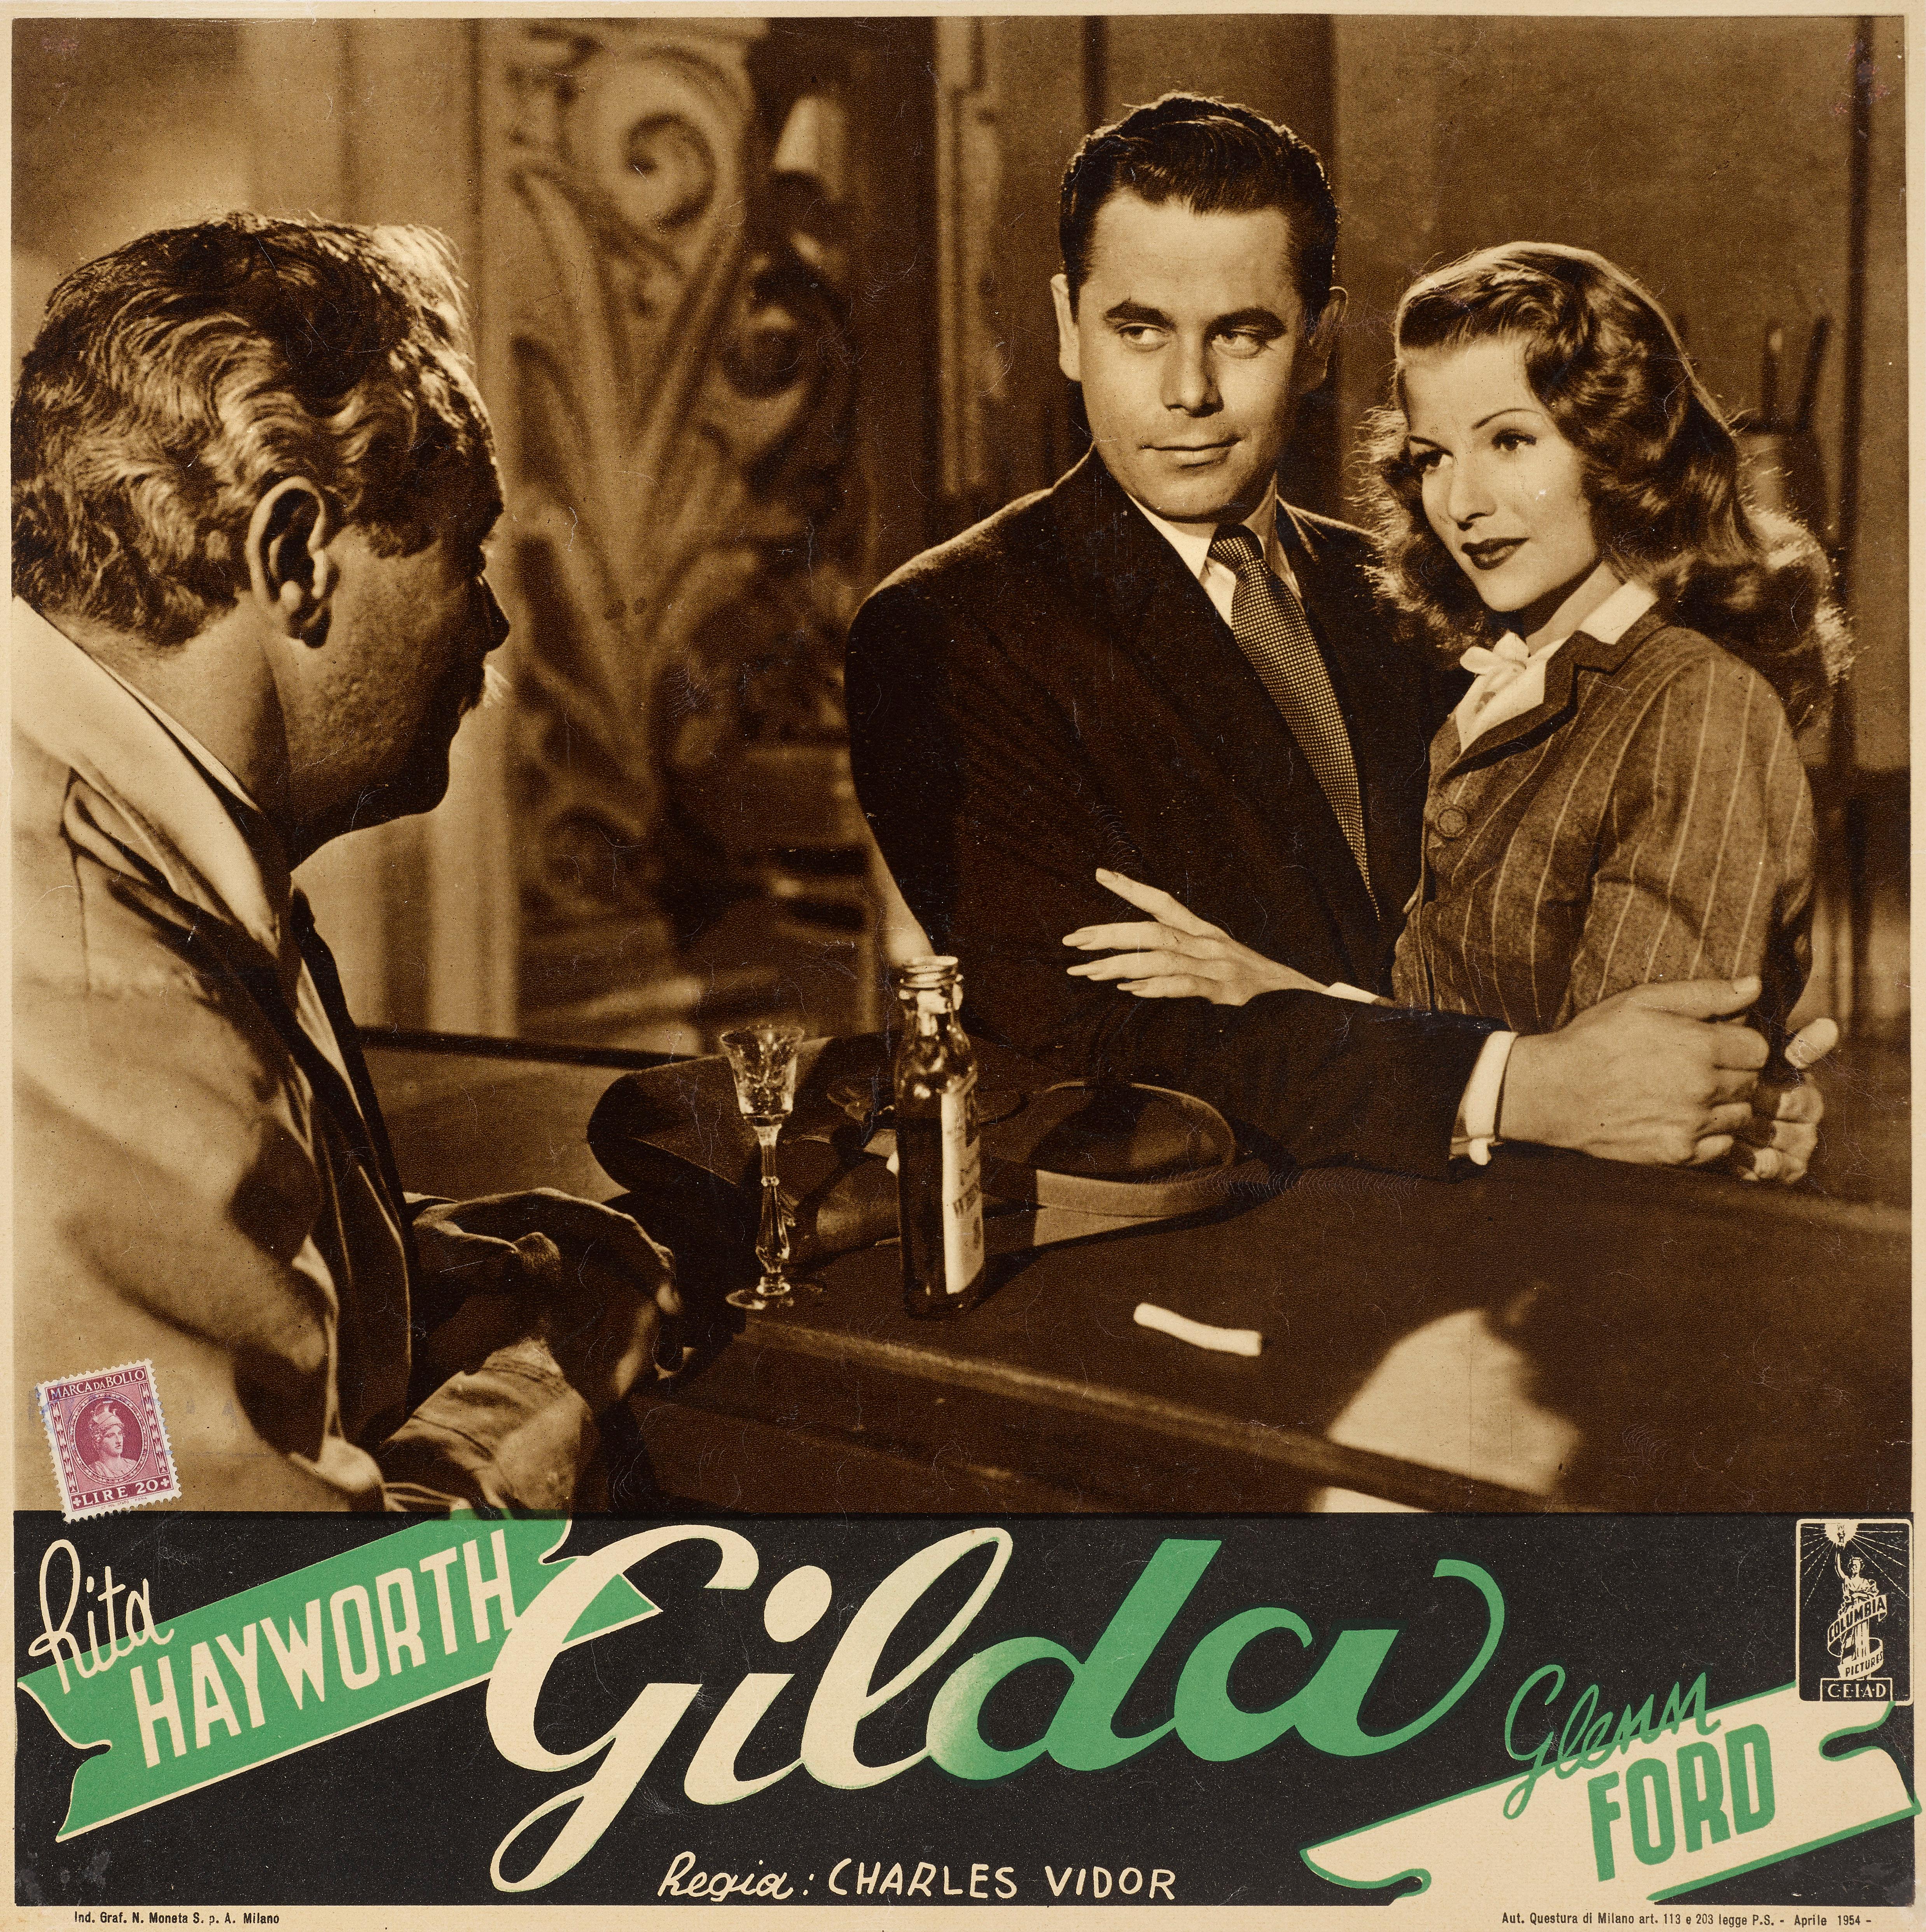 Originales italienisches Filmplakat, das für das Foyer eines Kinos entworfen wurde. Dieser Film Noir-Klassiker von 1946 mit Rita Hayworth und Glenn Ford in den Hauptrollen wurde von Charles Vidor inszeniert. Das Stück ist mit einem Stempel versehen,